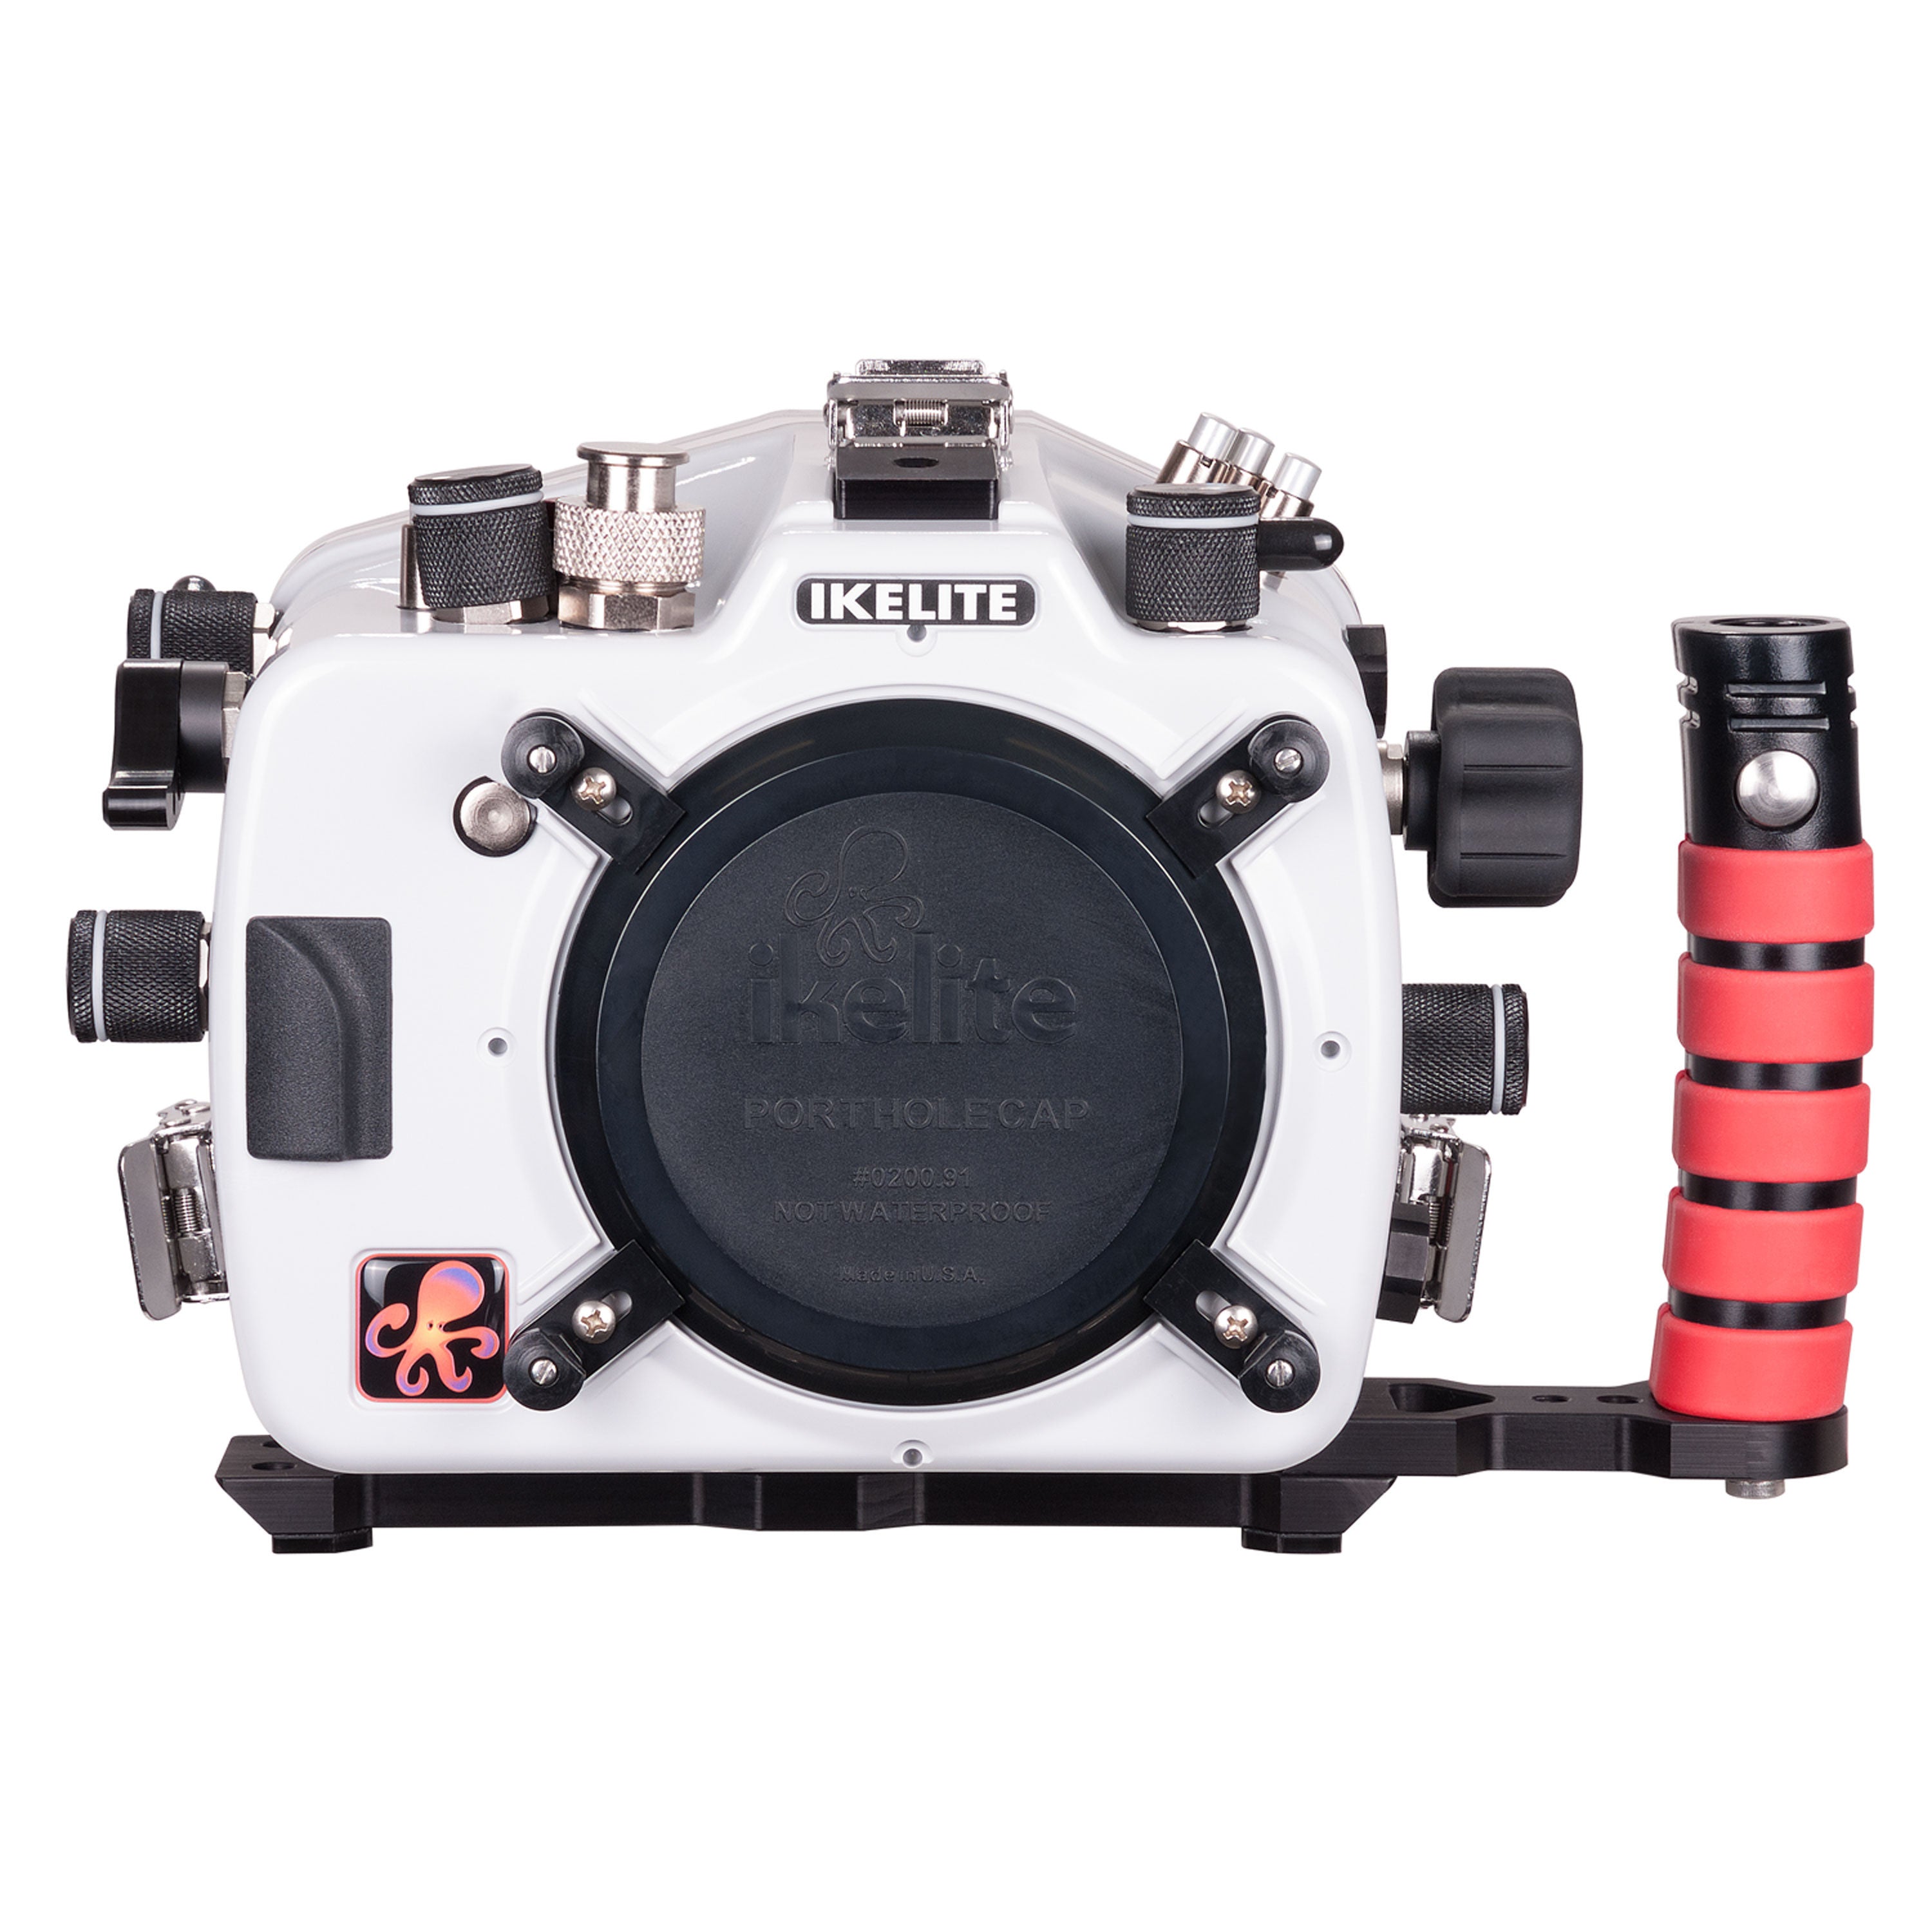 200FL Underwater Housing for Nikon D500 DSLR Cameras